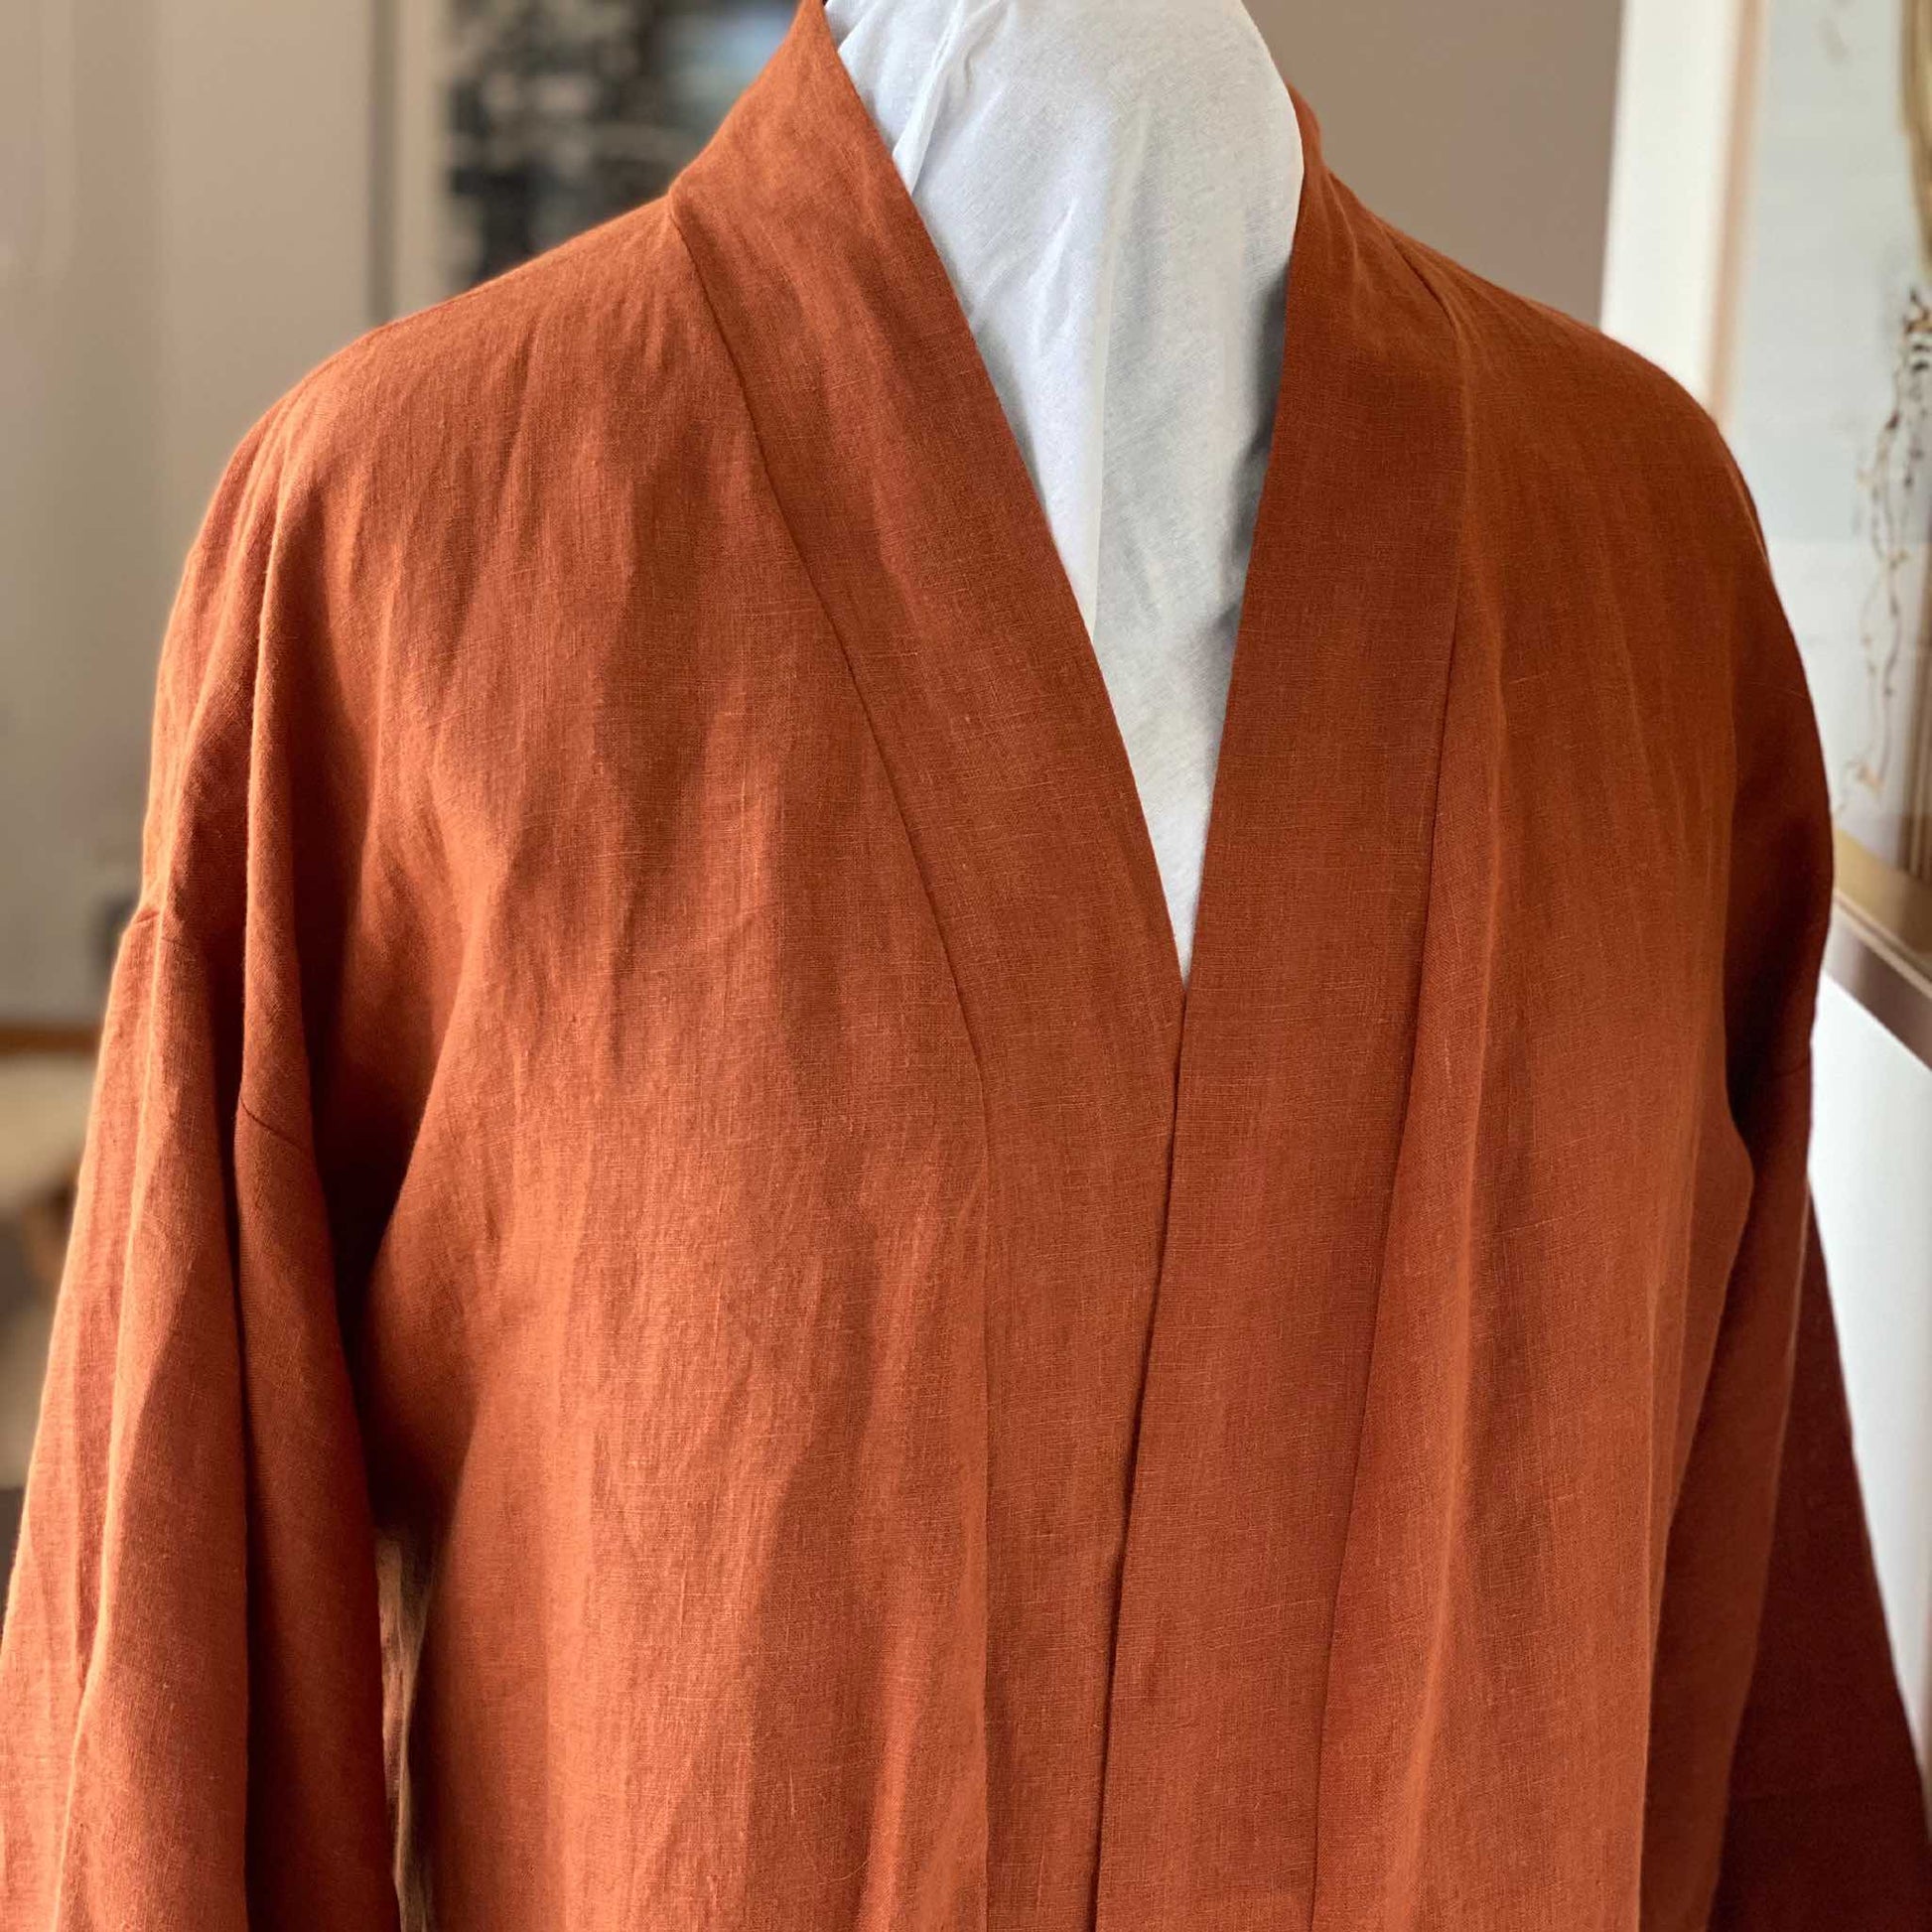 Box Sleeve Men's Robe PDF sewing pattern in linen: Size Men S - 2XL